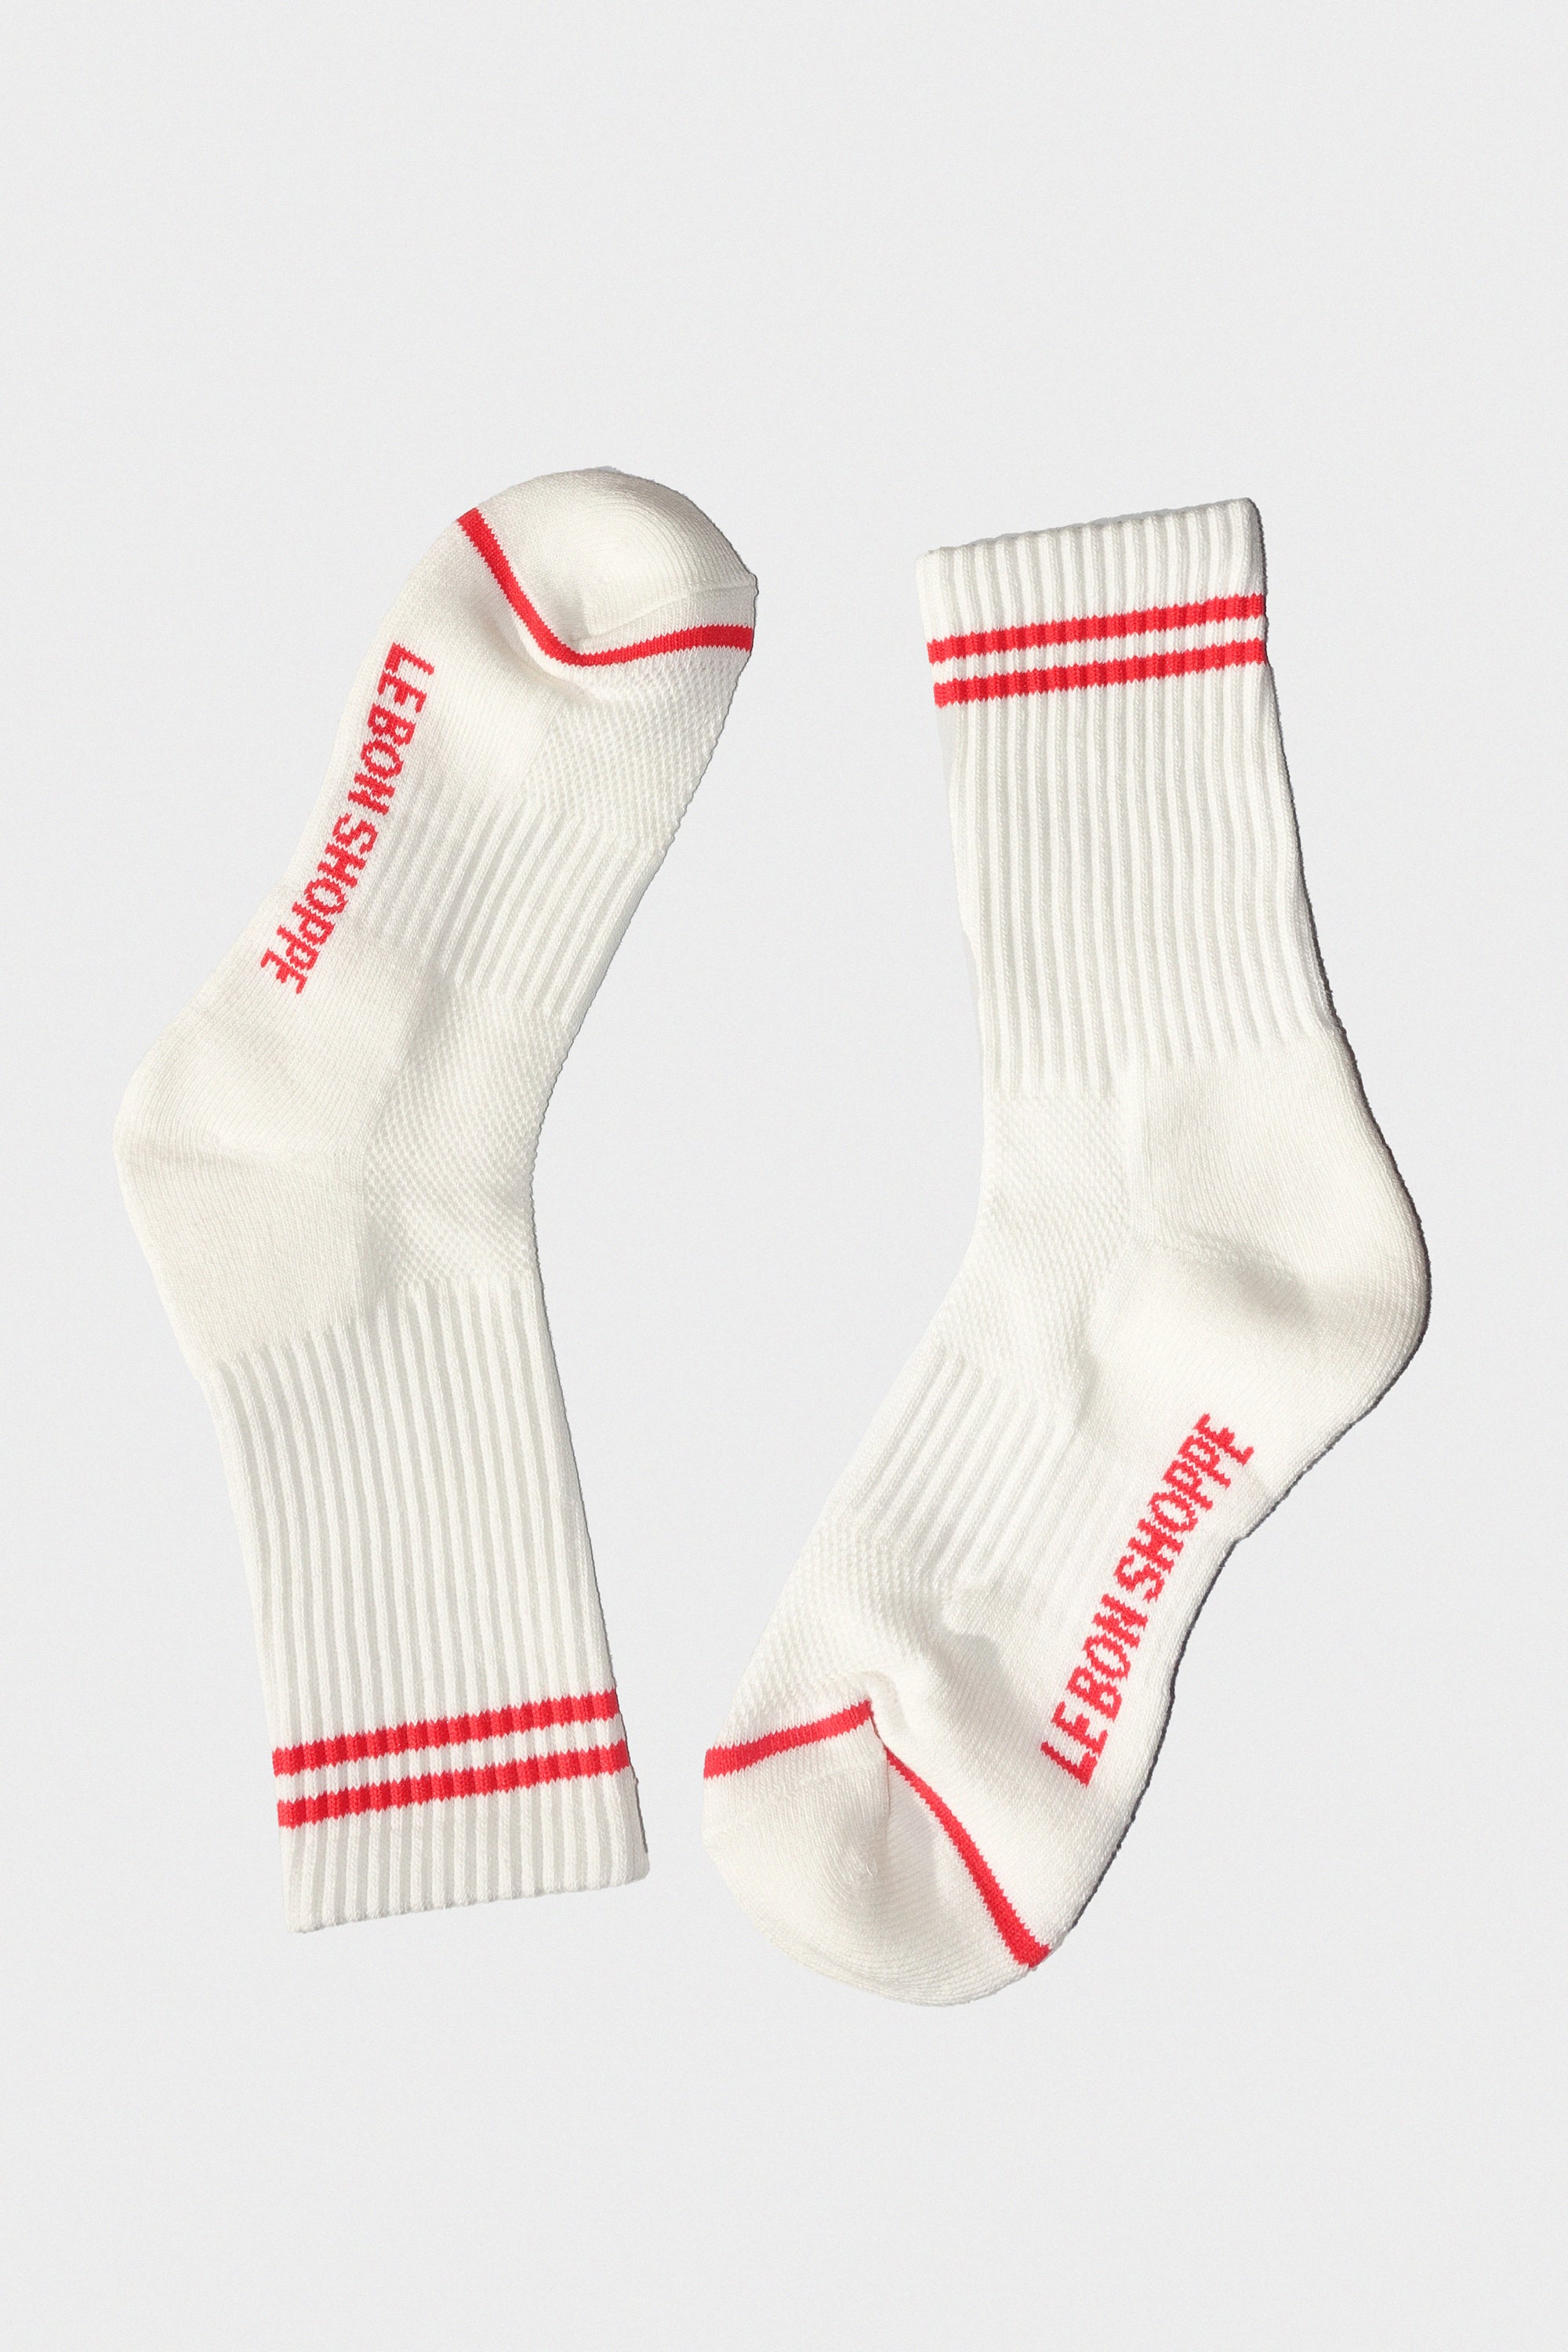 Boyfriend Socks in Clean White by Le Bon Shoppe